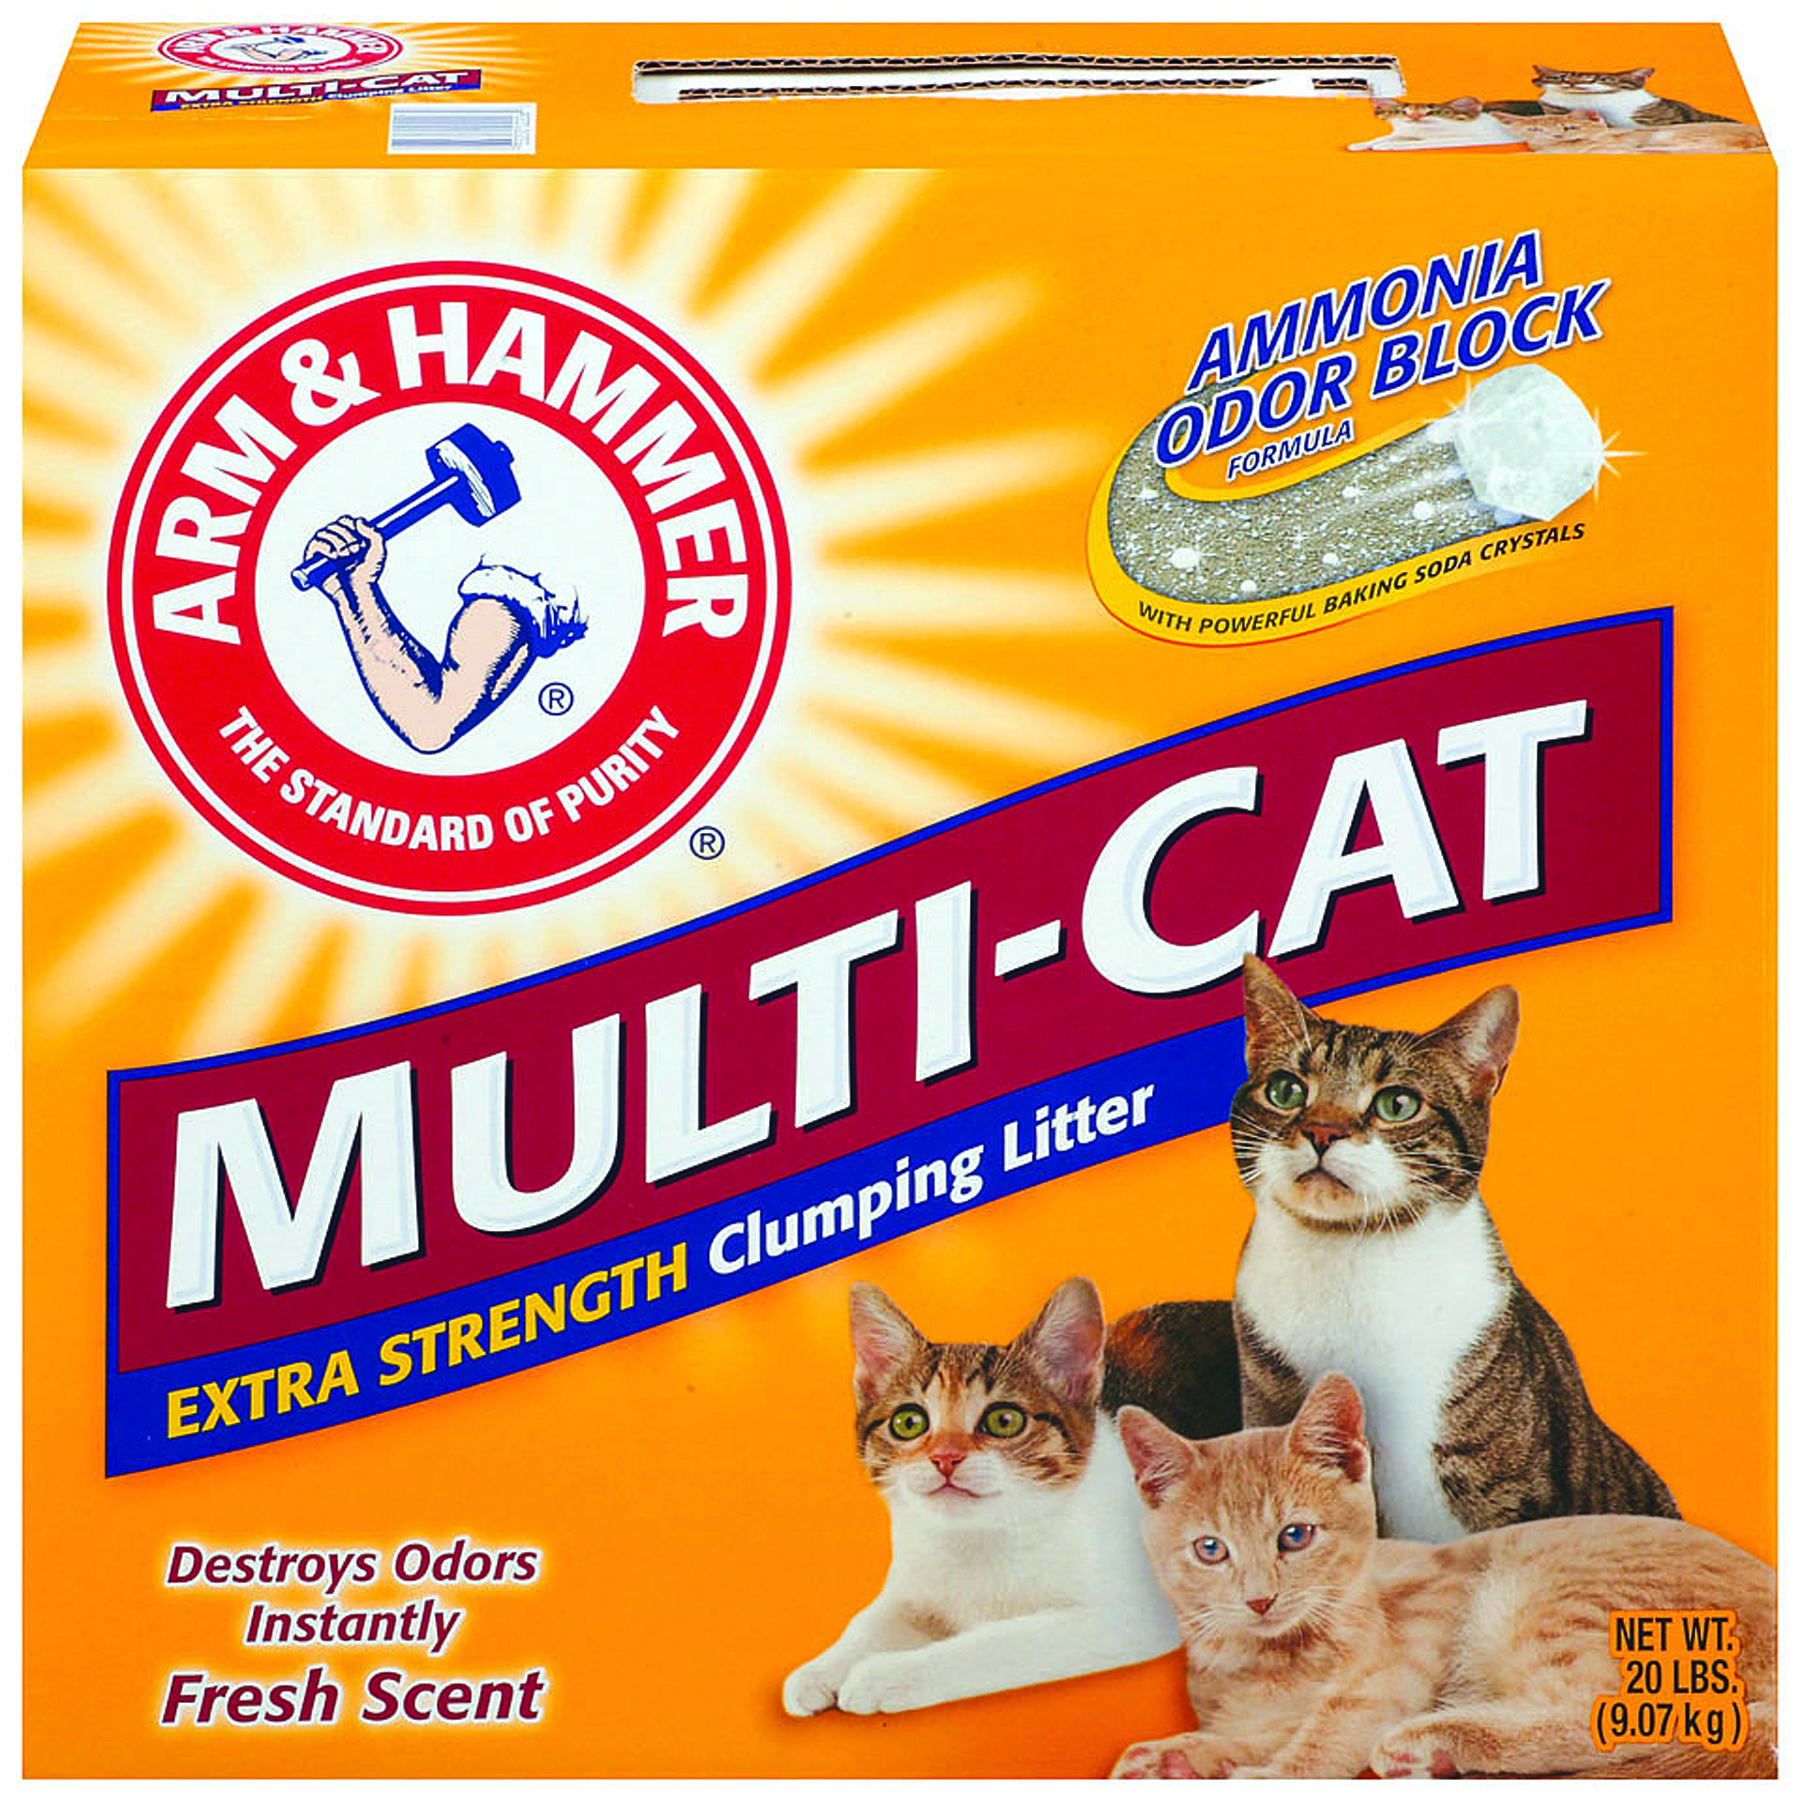 ARM & HAMMER MULTI-CAT LITTER